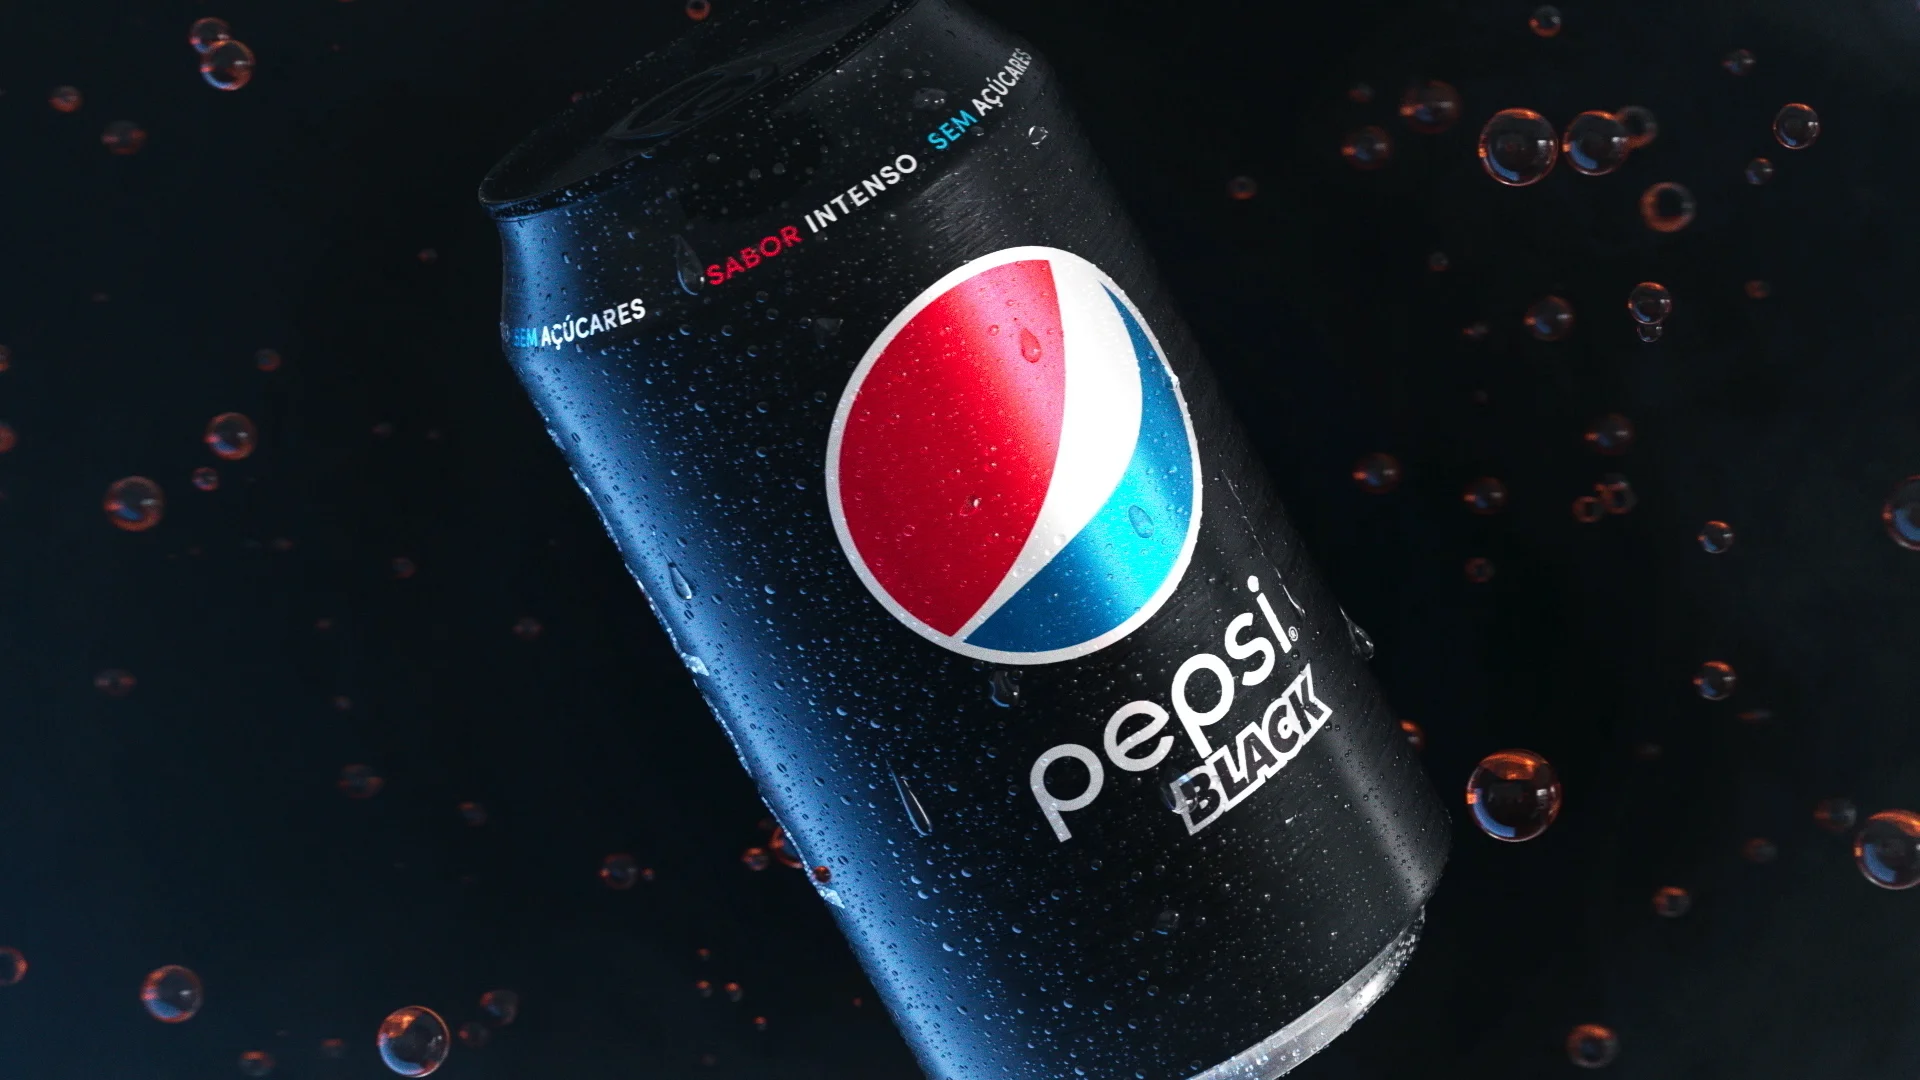 Pepsi Black on Vimeo